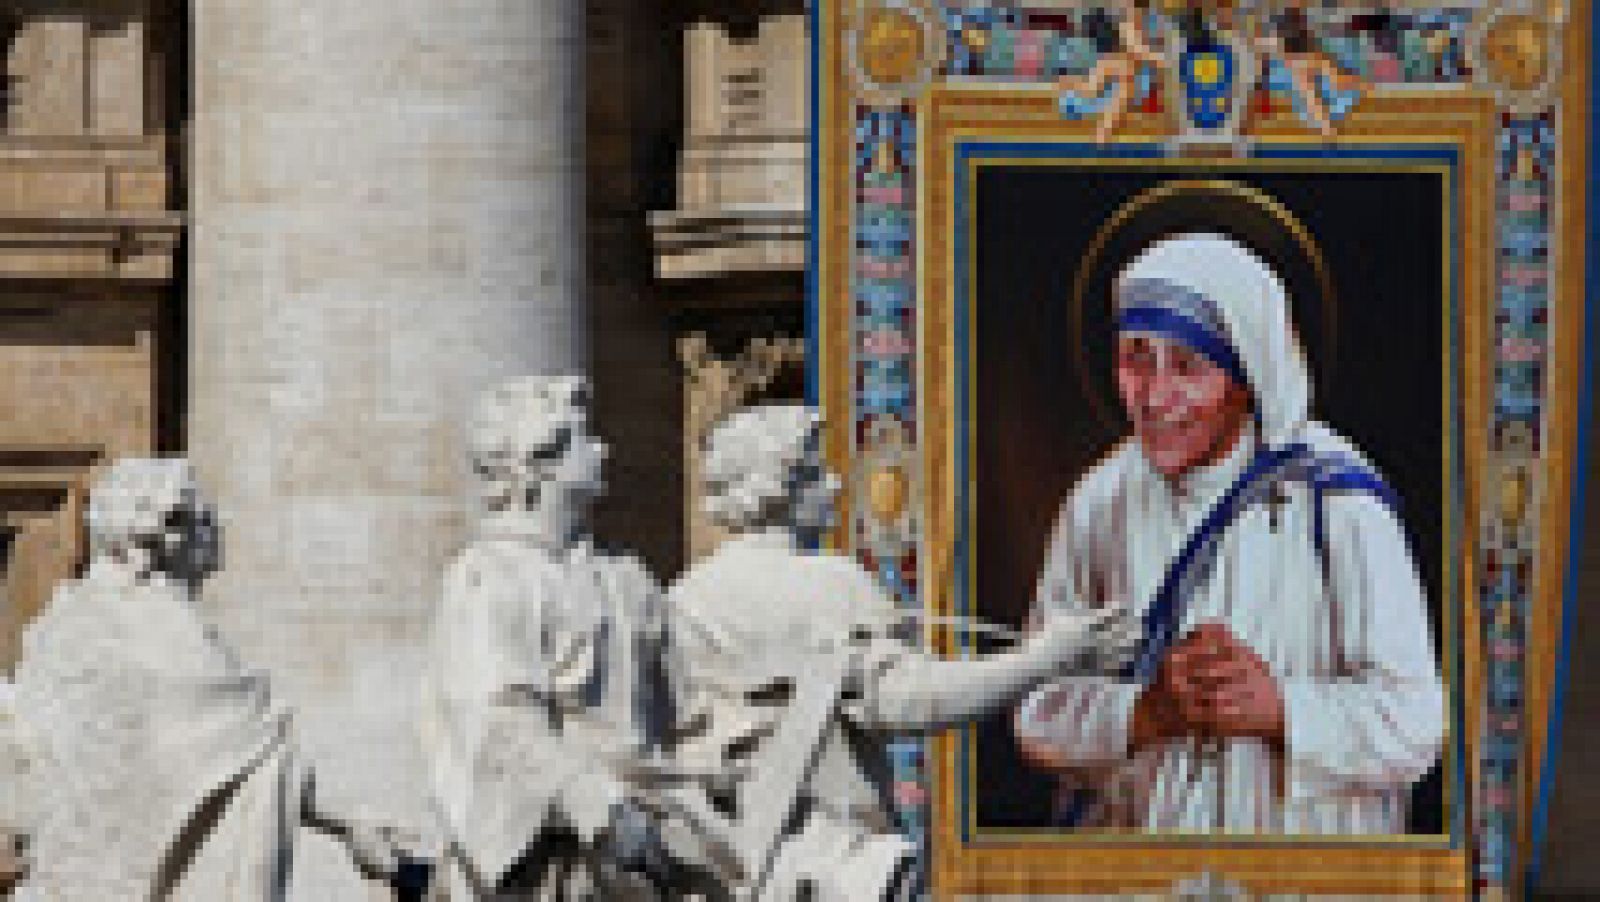 Káº¿t quáº£ hÃ¬nh áº£nh cho poster on gutters of saint mother teresa